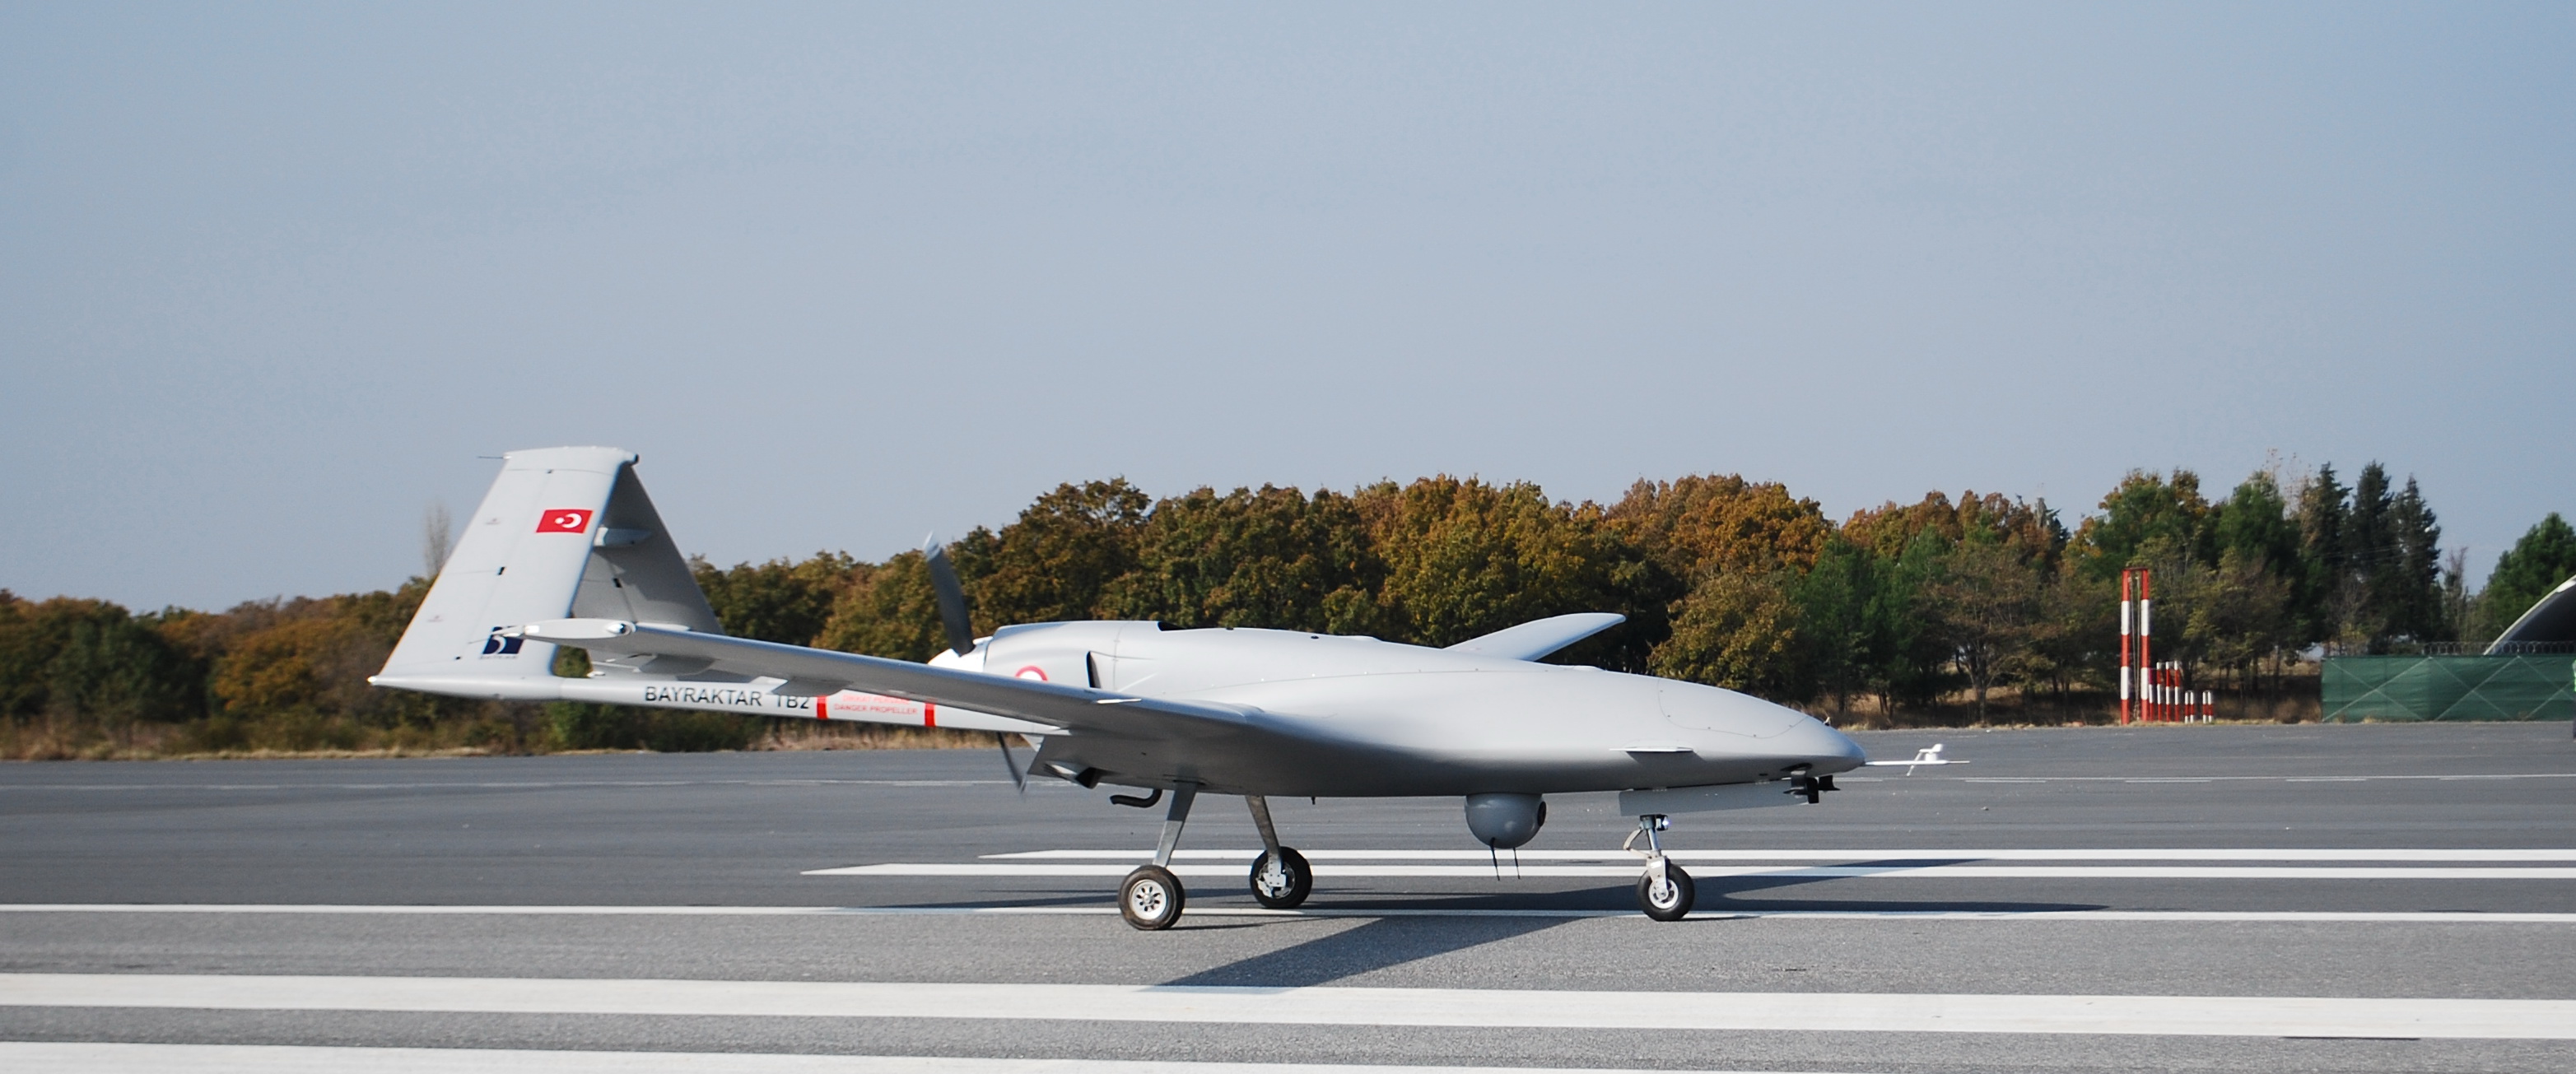 România vrea să cumpere drone Bayraktar. Valoarea estimată  este de 300 milioane dolari